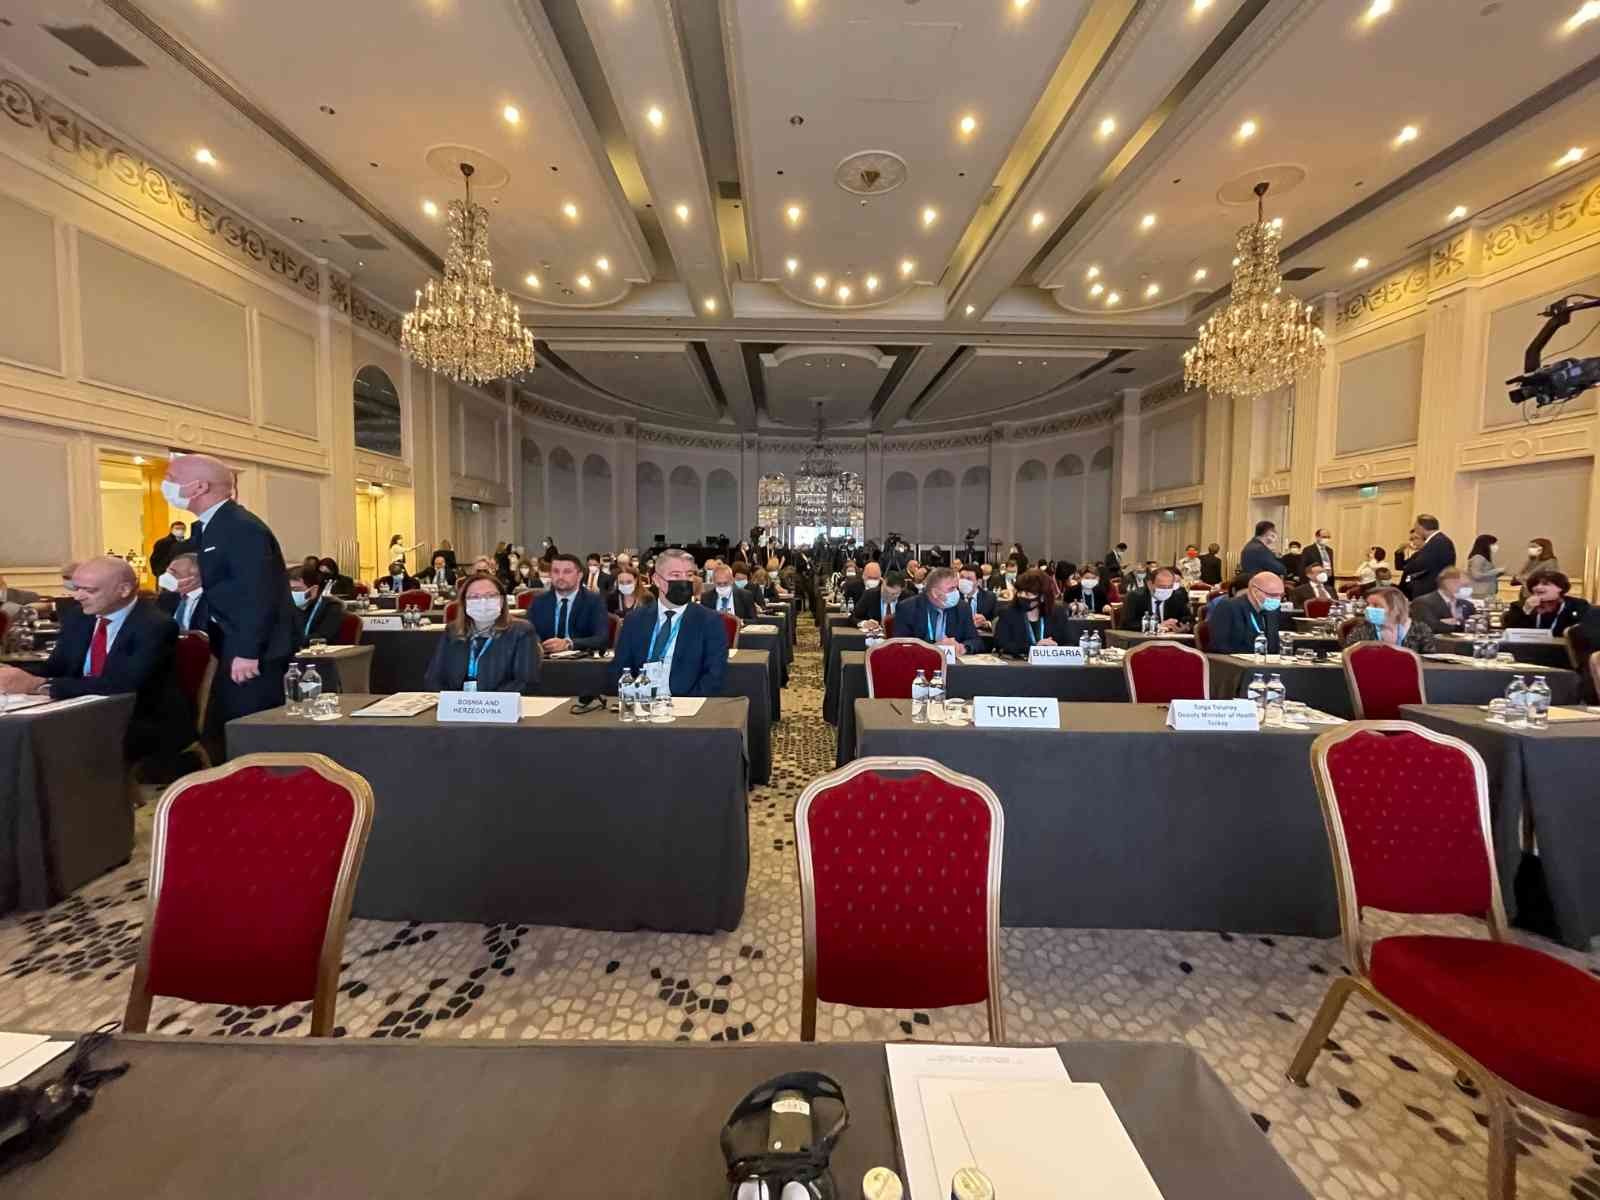 Dünya Sağlık Örgütü(DSÖ) Avrupa Bölgesi Göç ve Sağlık Yüksek Düzeyli Toplantısı İstanbul’da gerçekleşti. Toplantıda konuşan Sağlık Bakanı ...